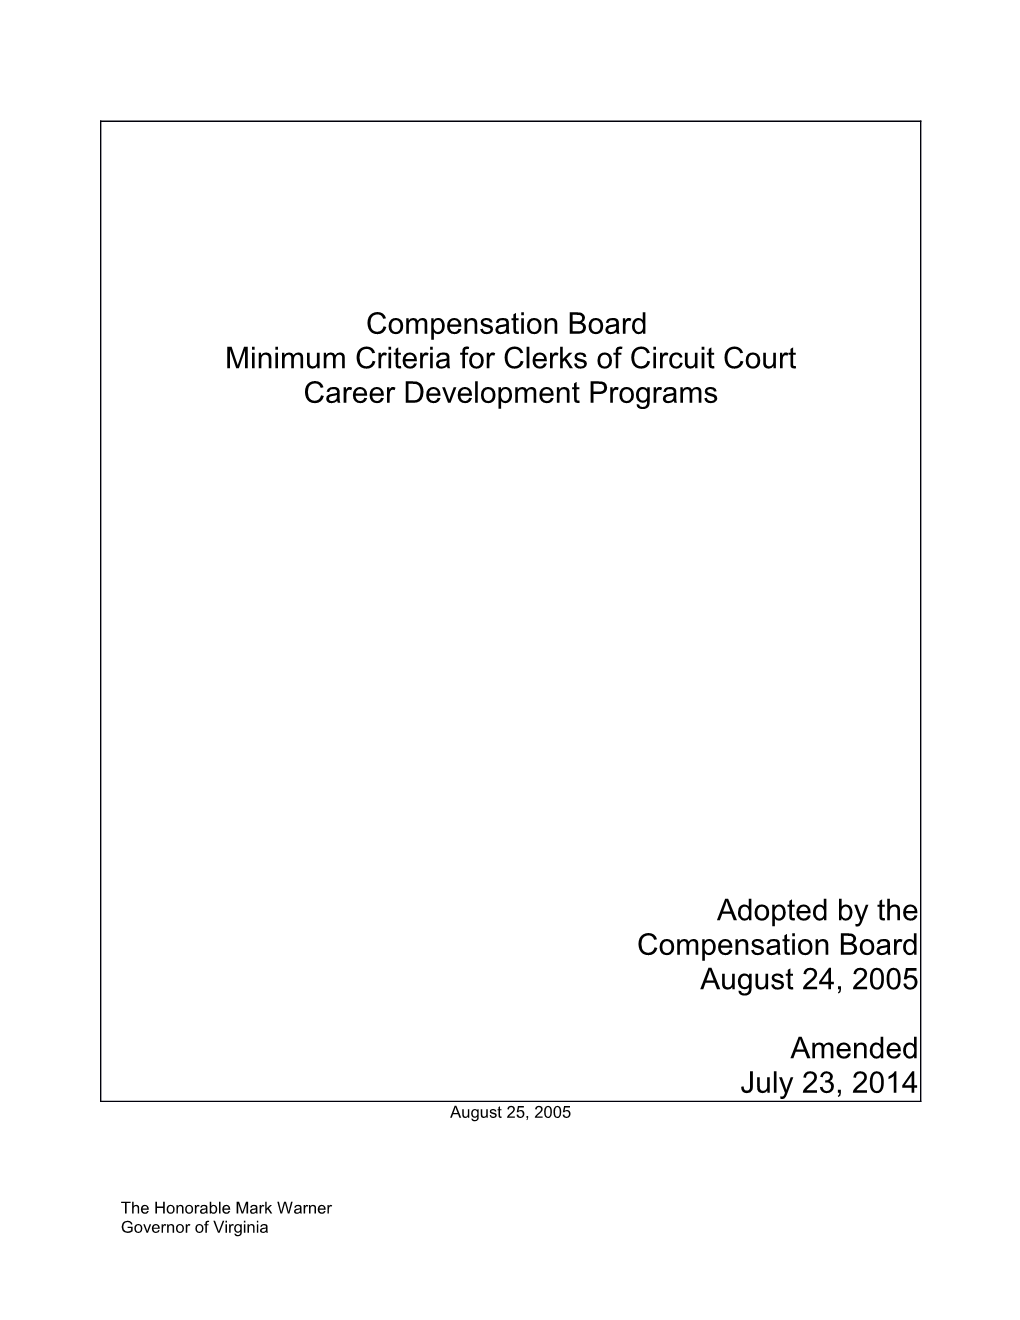 Minimum Criteria for Clerks of Circuit Court